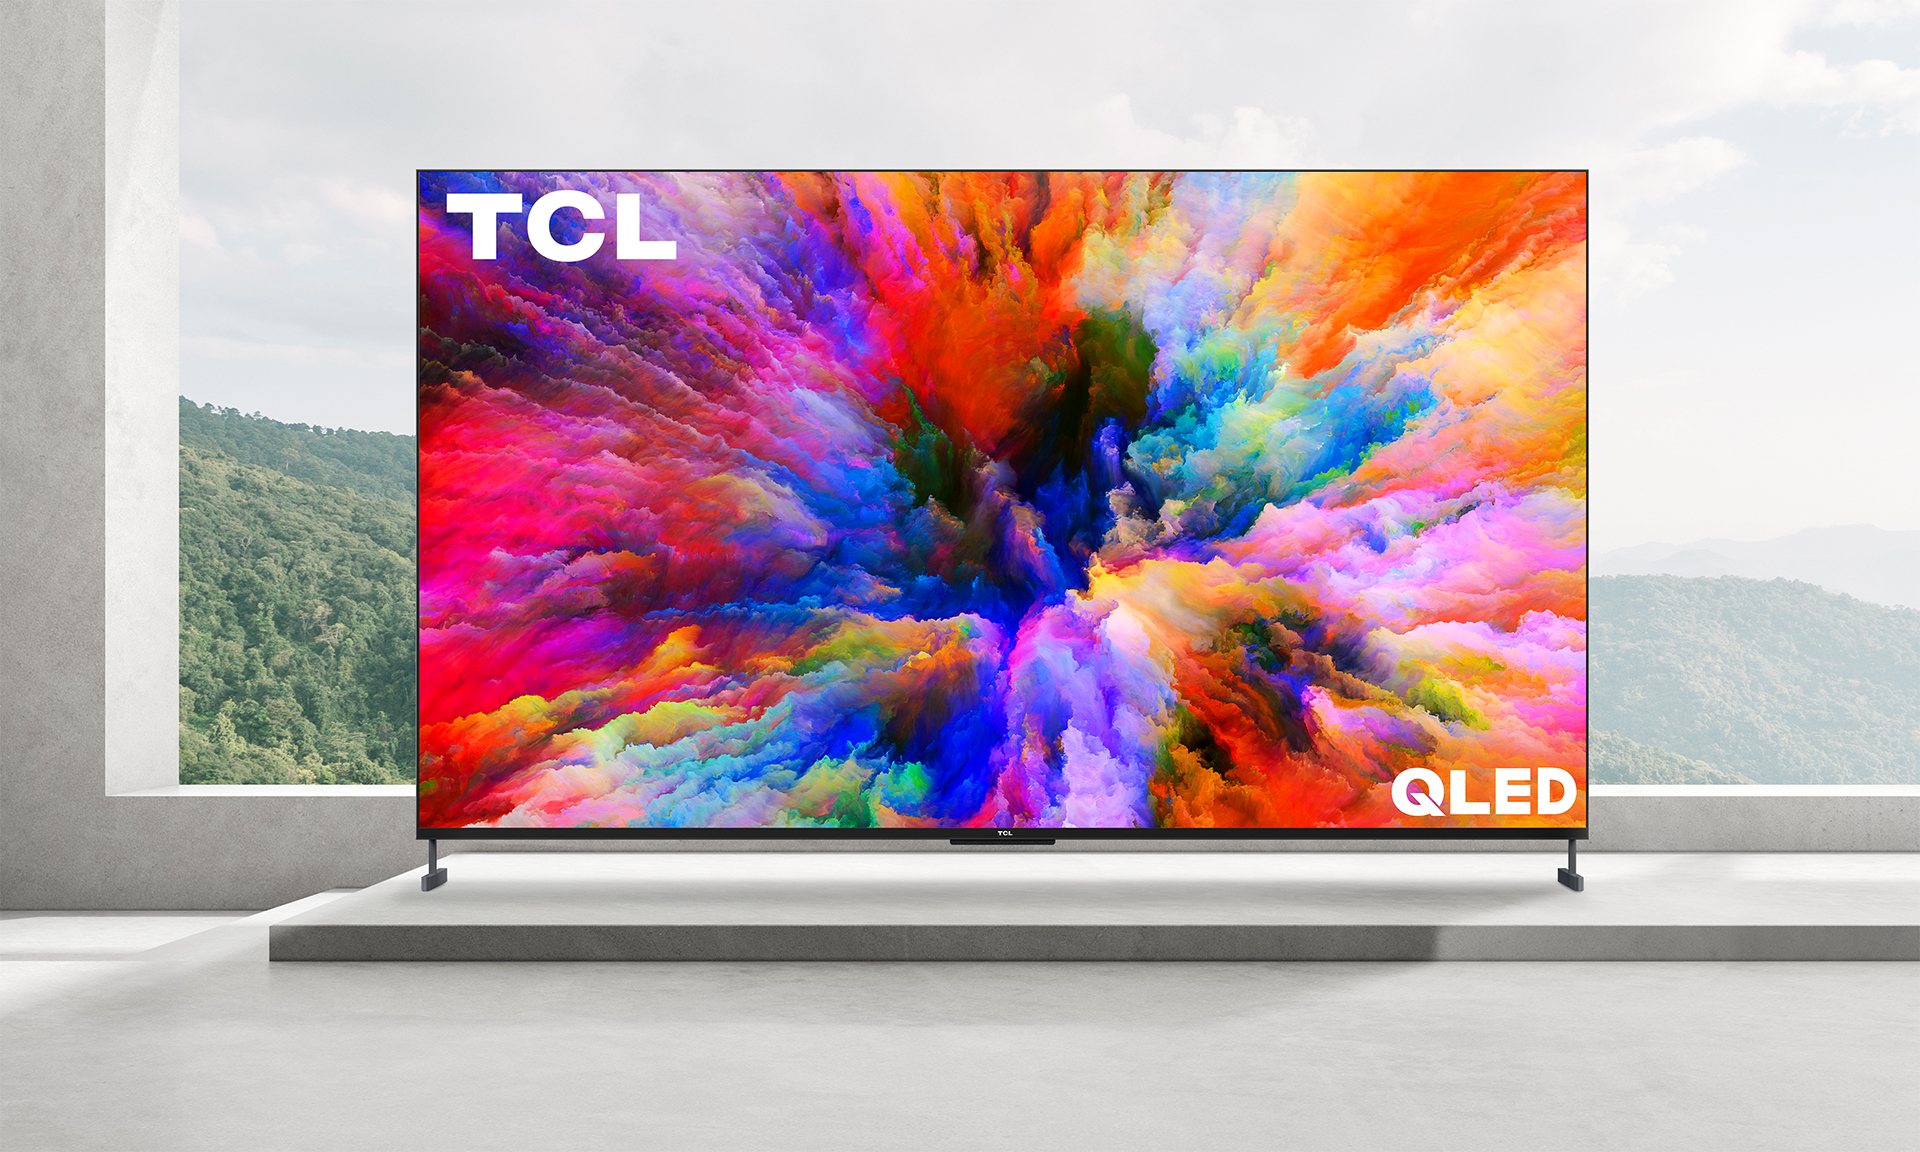 TCL:s nya TV-apparater och soundbars syftar till att göra din underhållningsupplevelse bättre